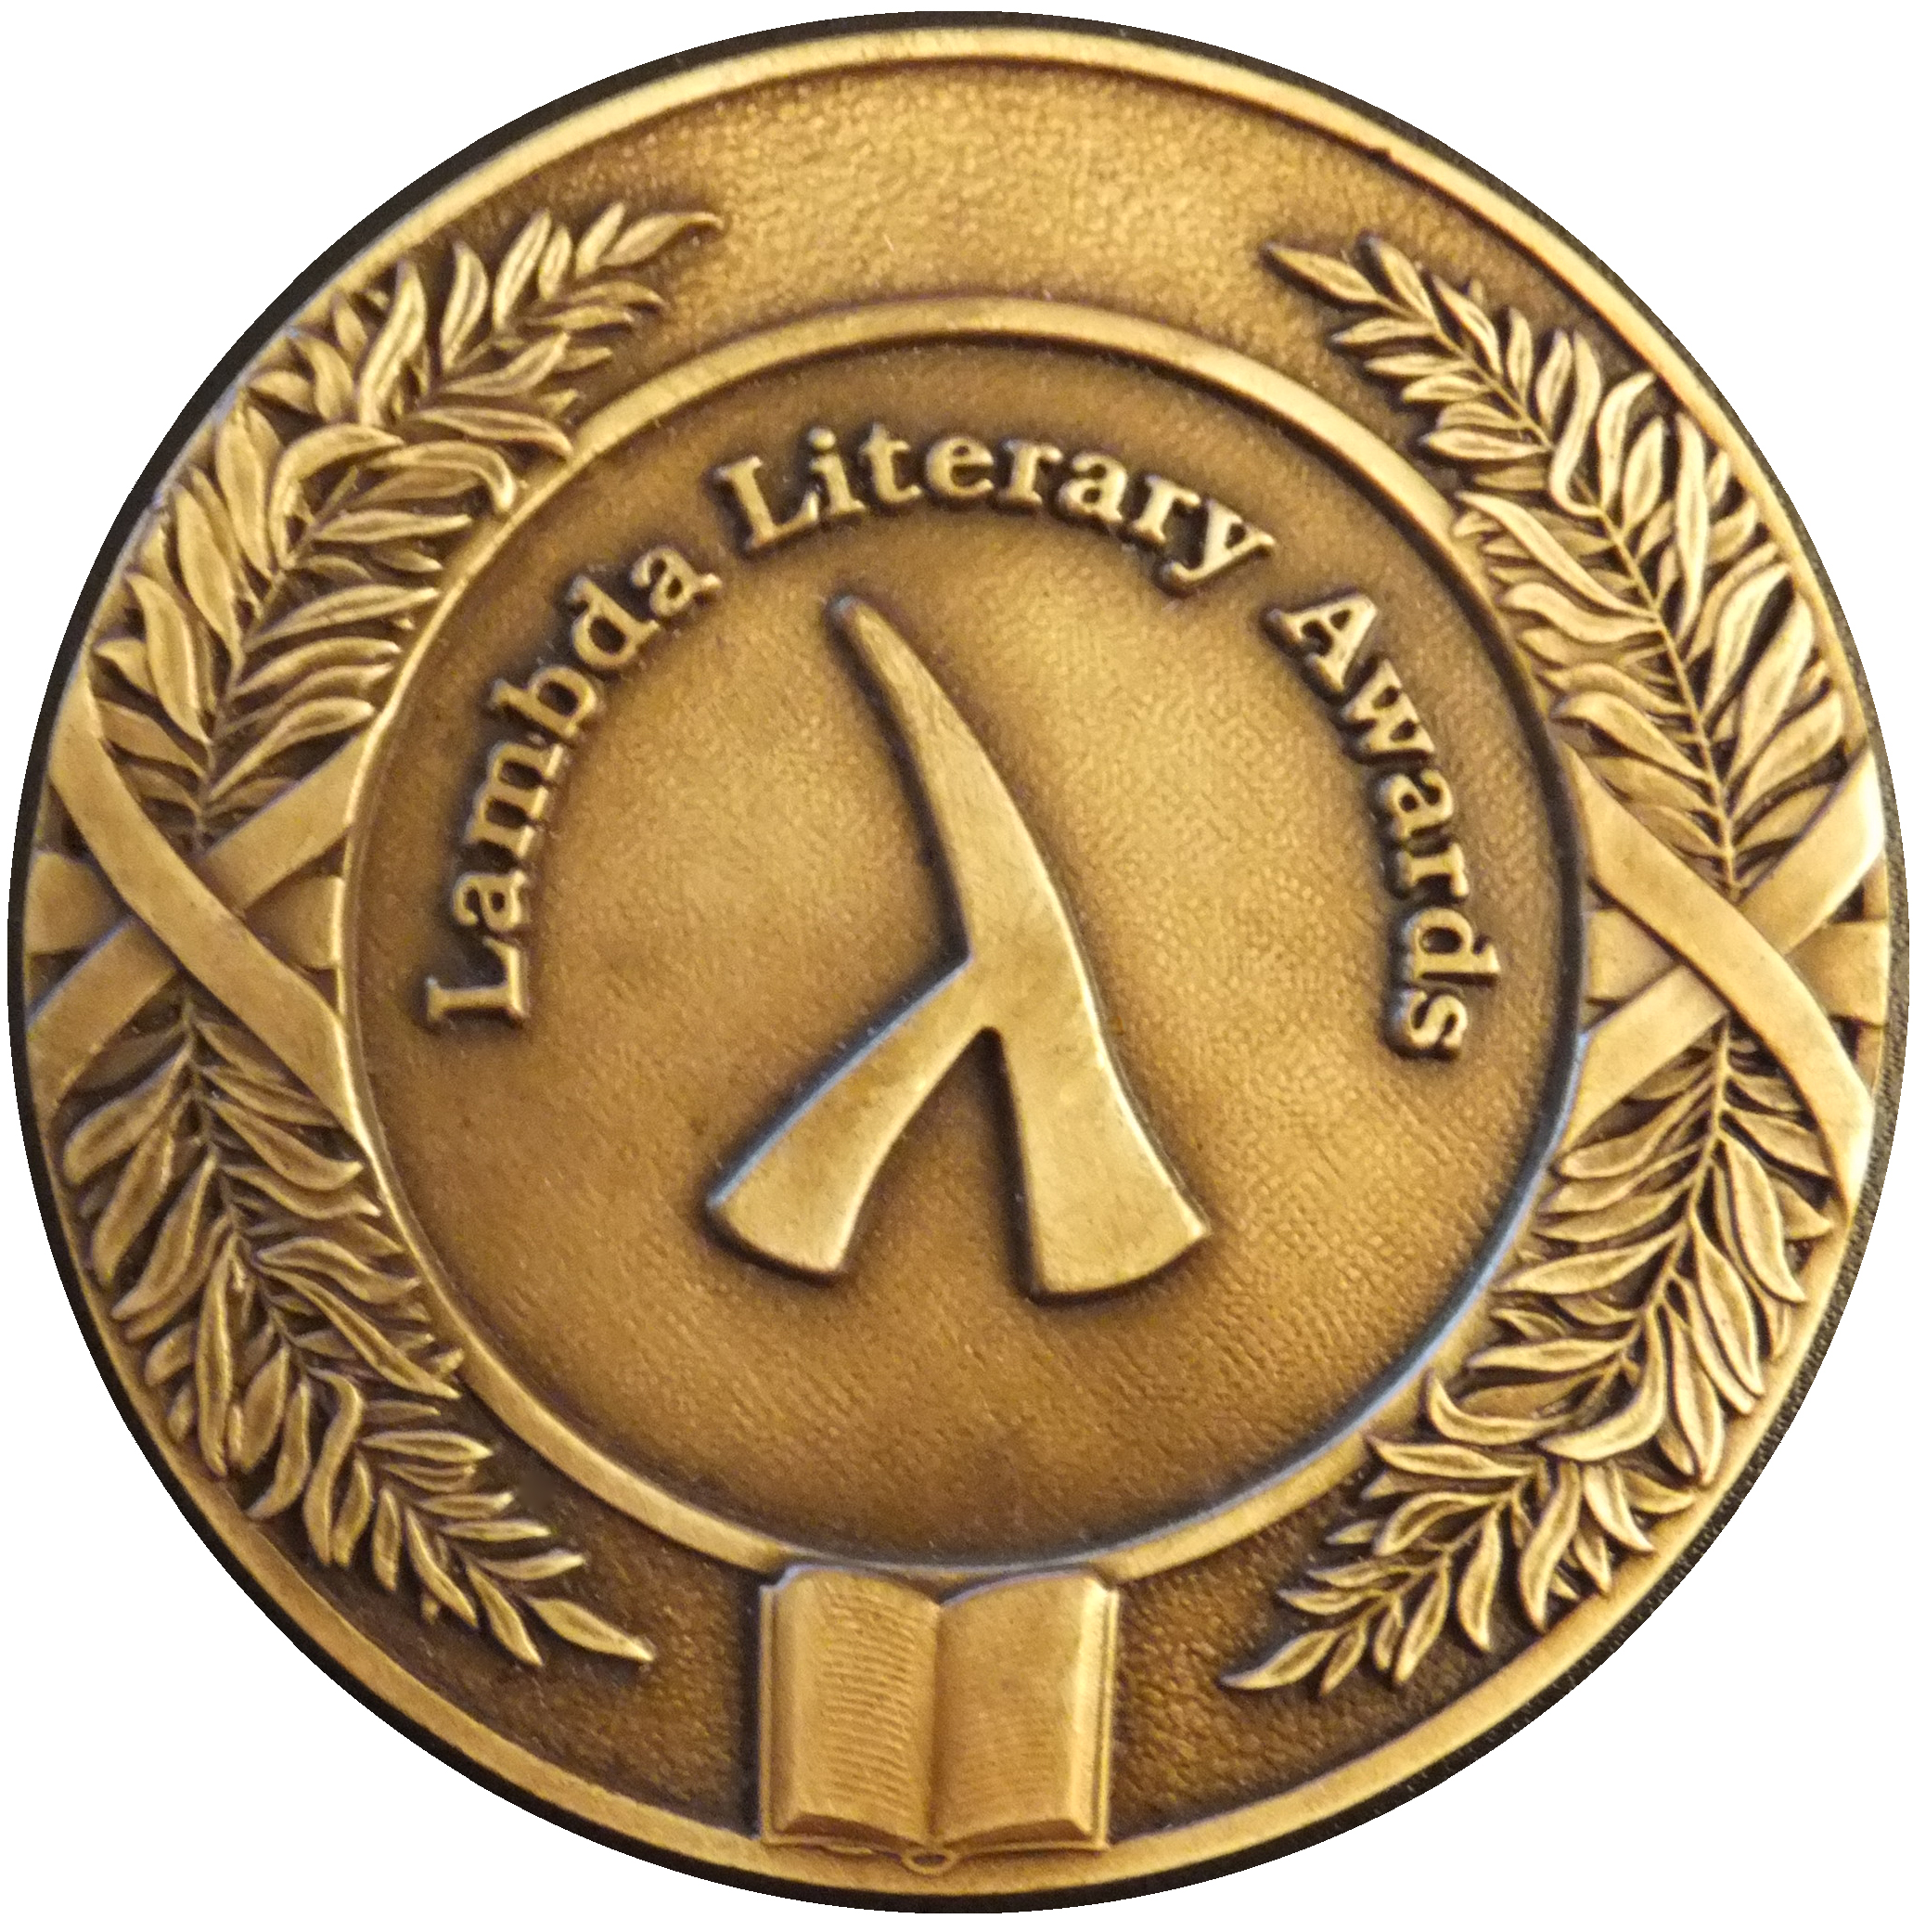 Lambda Literary Award